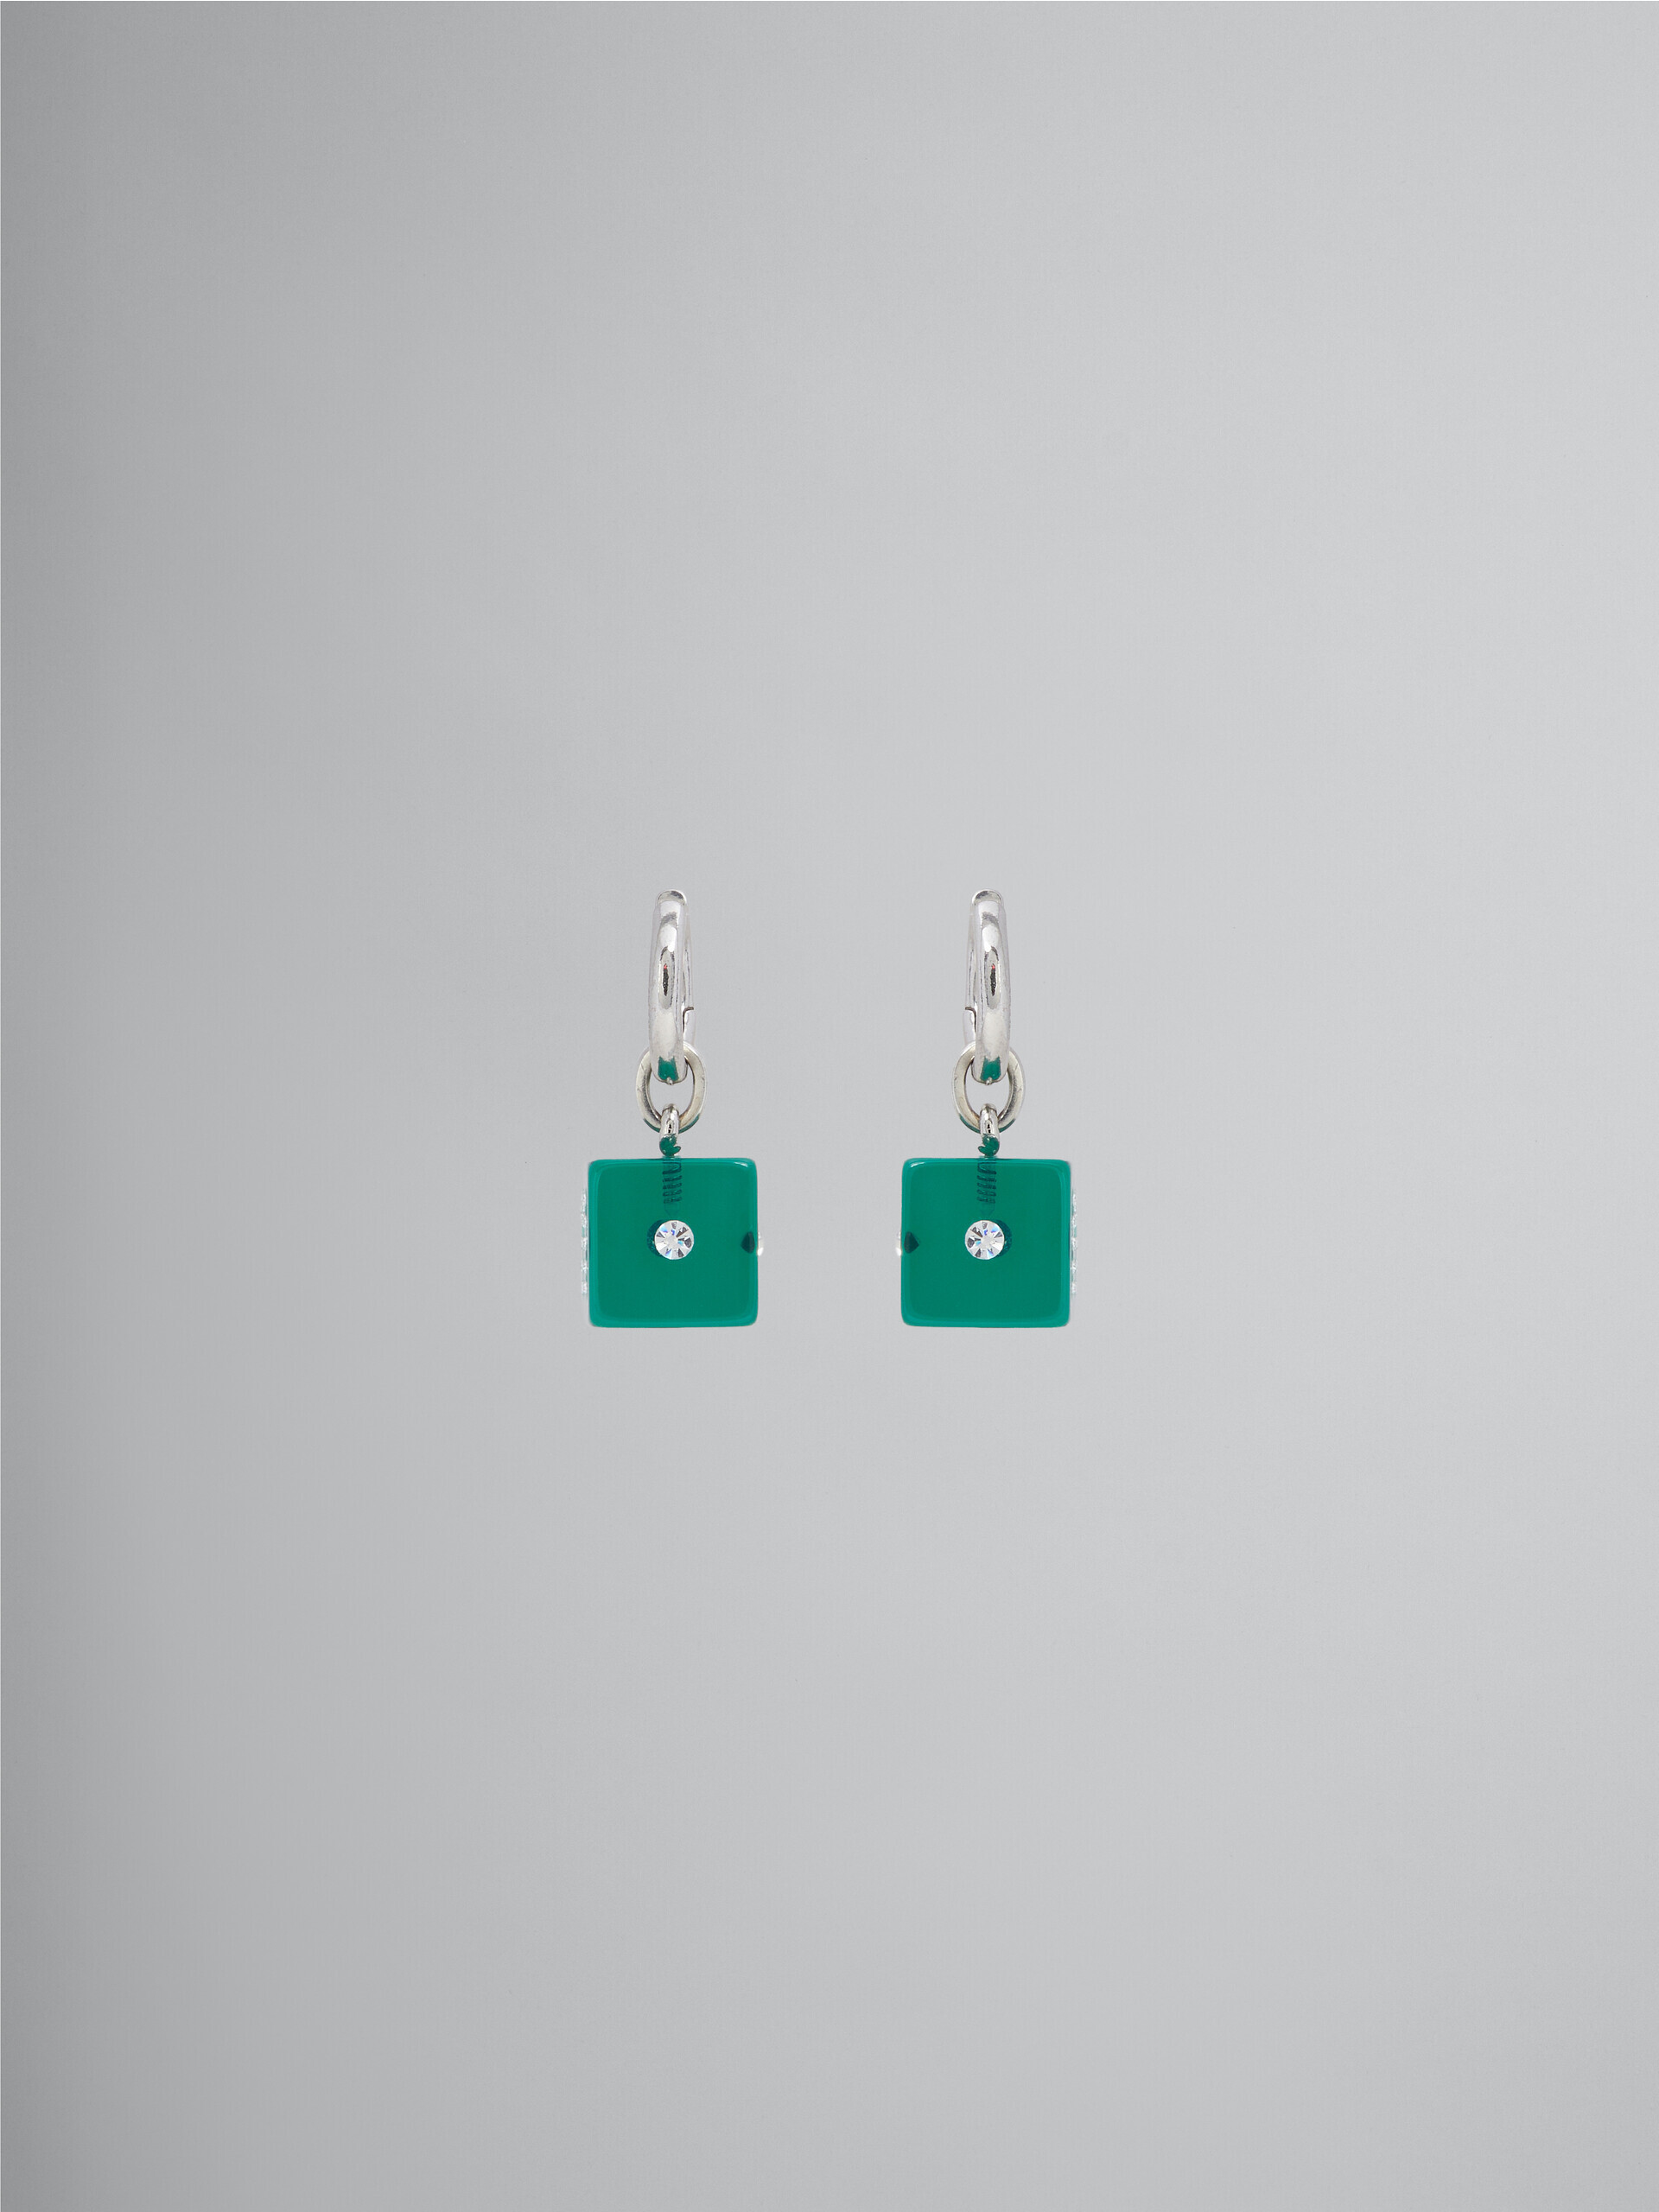 Resin dice charm earrings - Earrings - Image 1